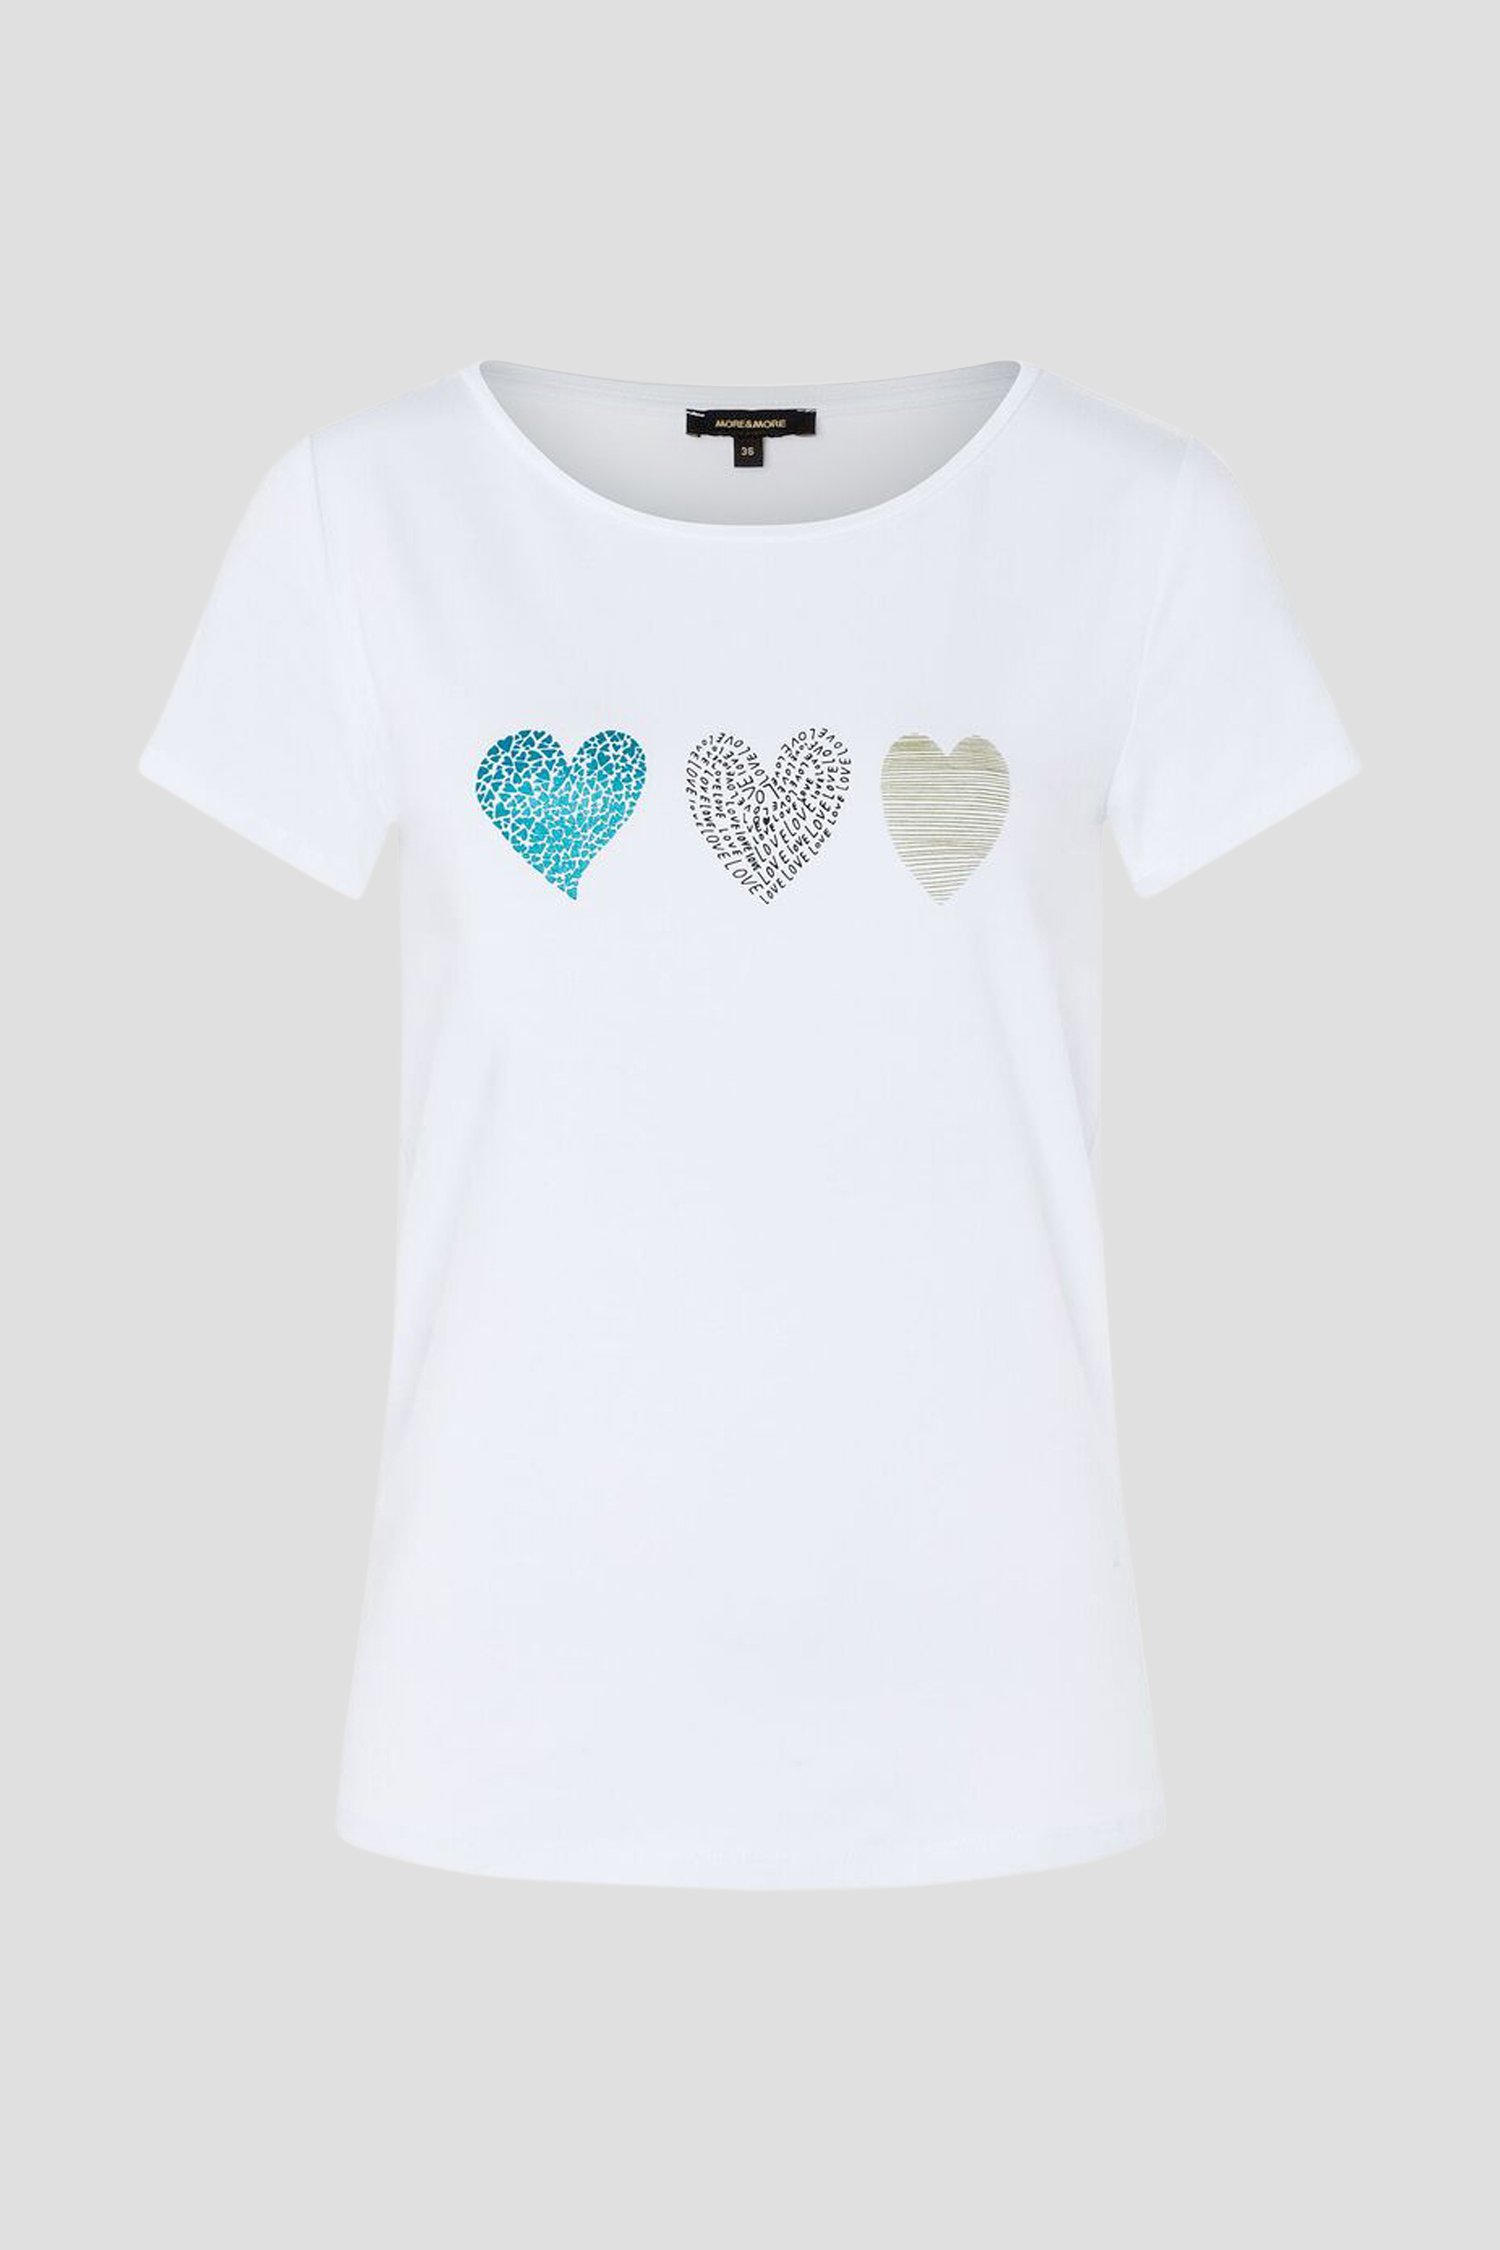 Wit T-shirt met hartjesprint van More & More voor Dames